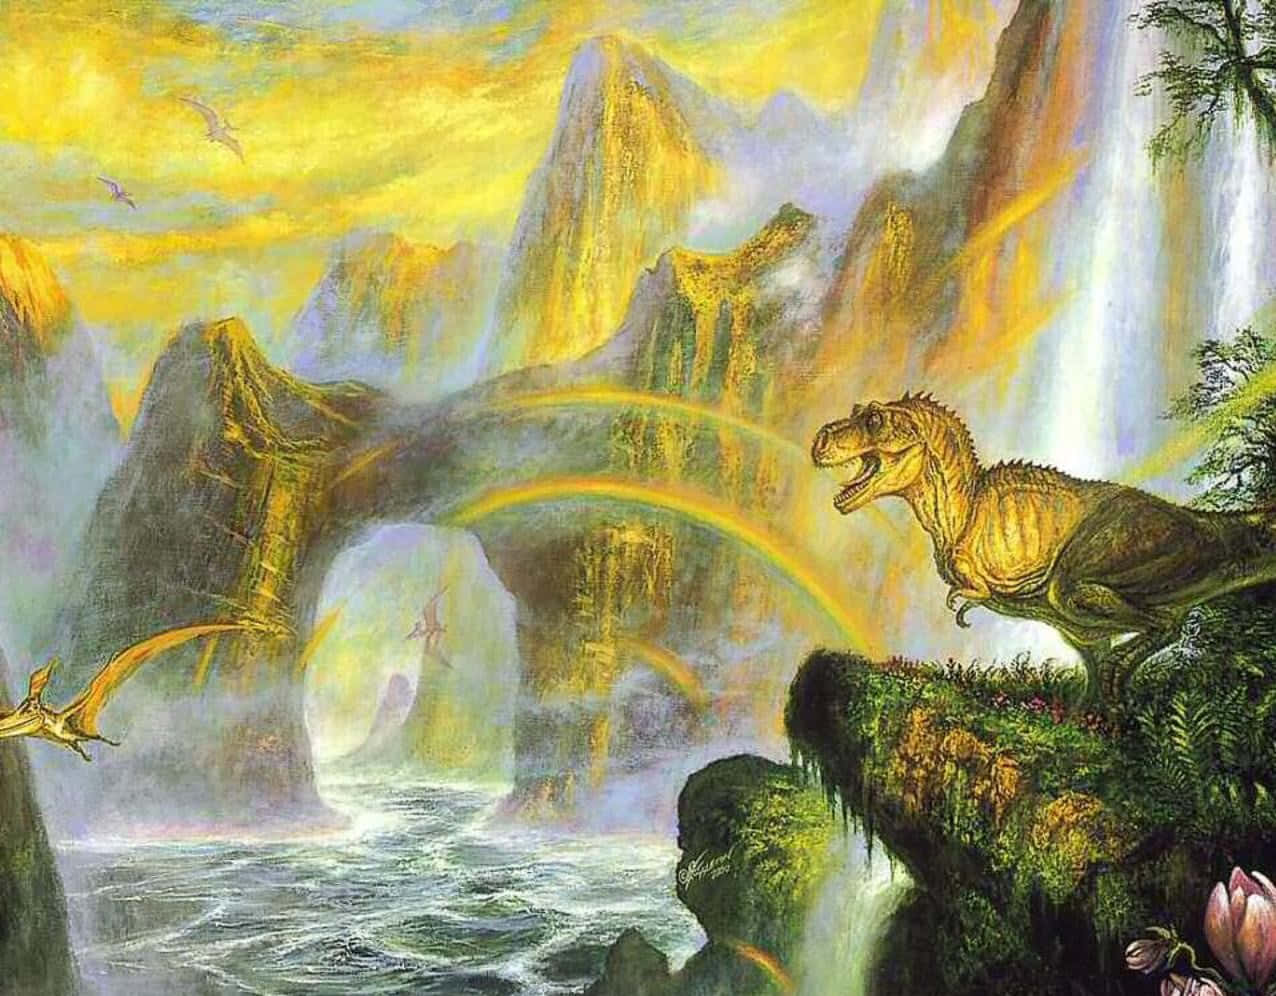 Enmålning Av En Dinosaurie I En Vattenfall.